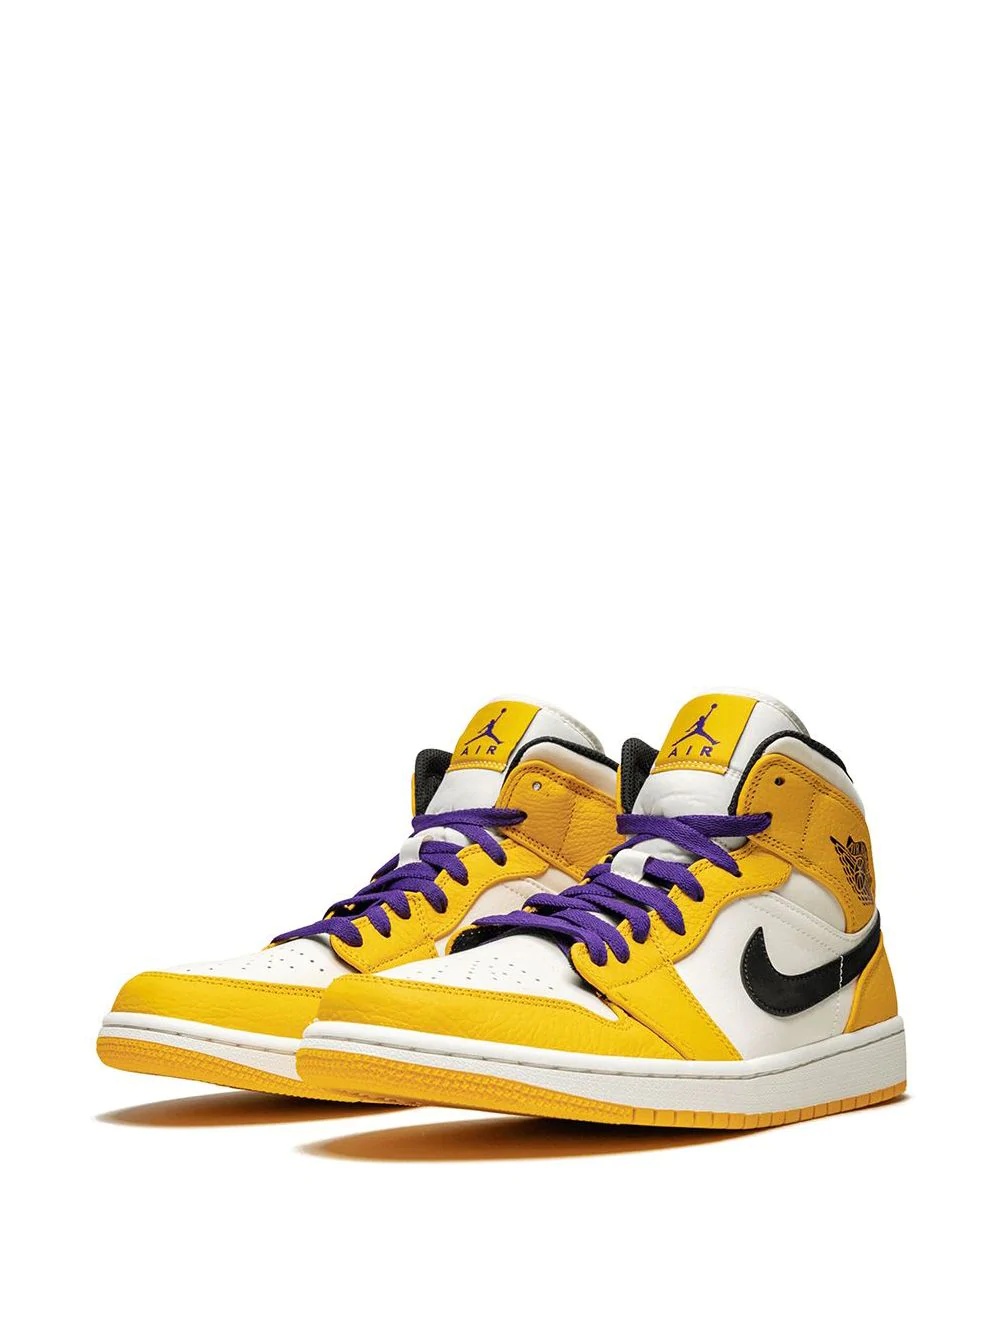 Air Jordan 1 Mid SE "Lakers" sneakers - 2